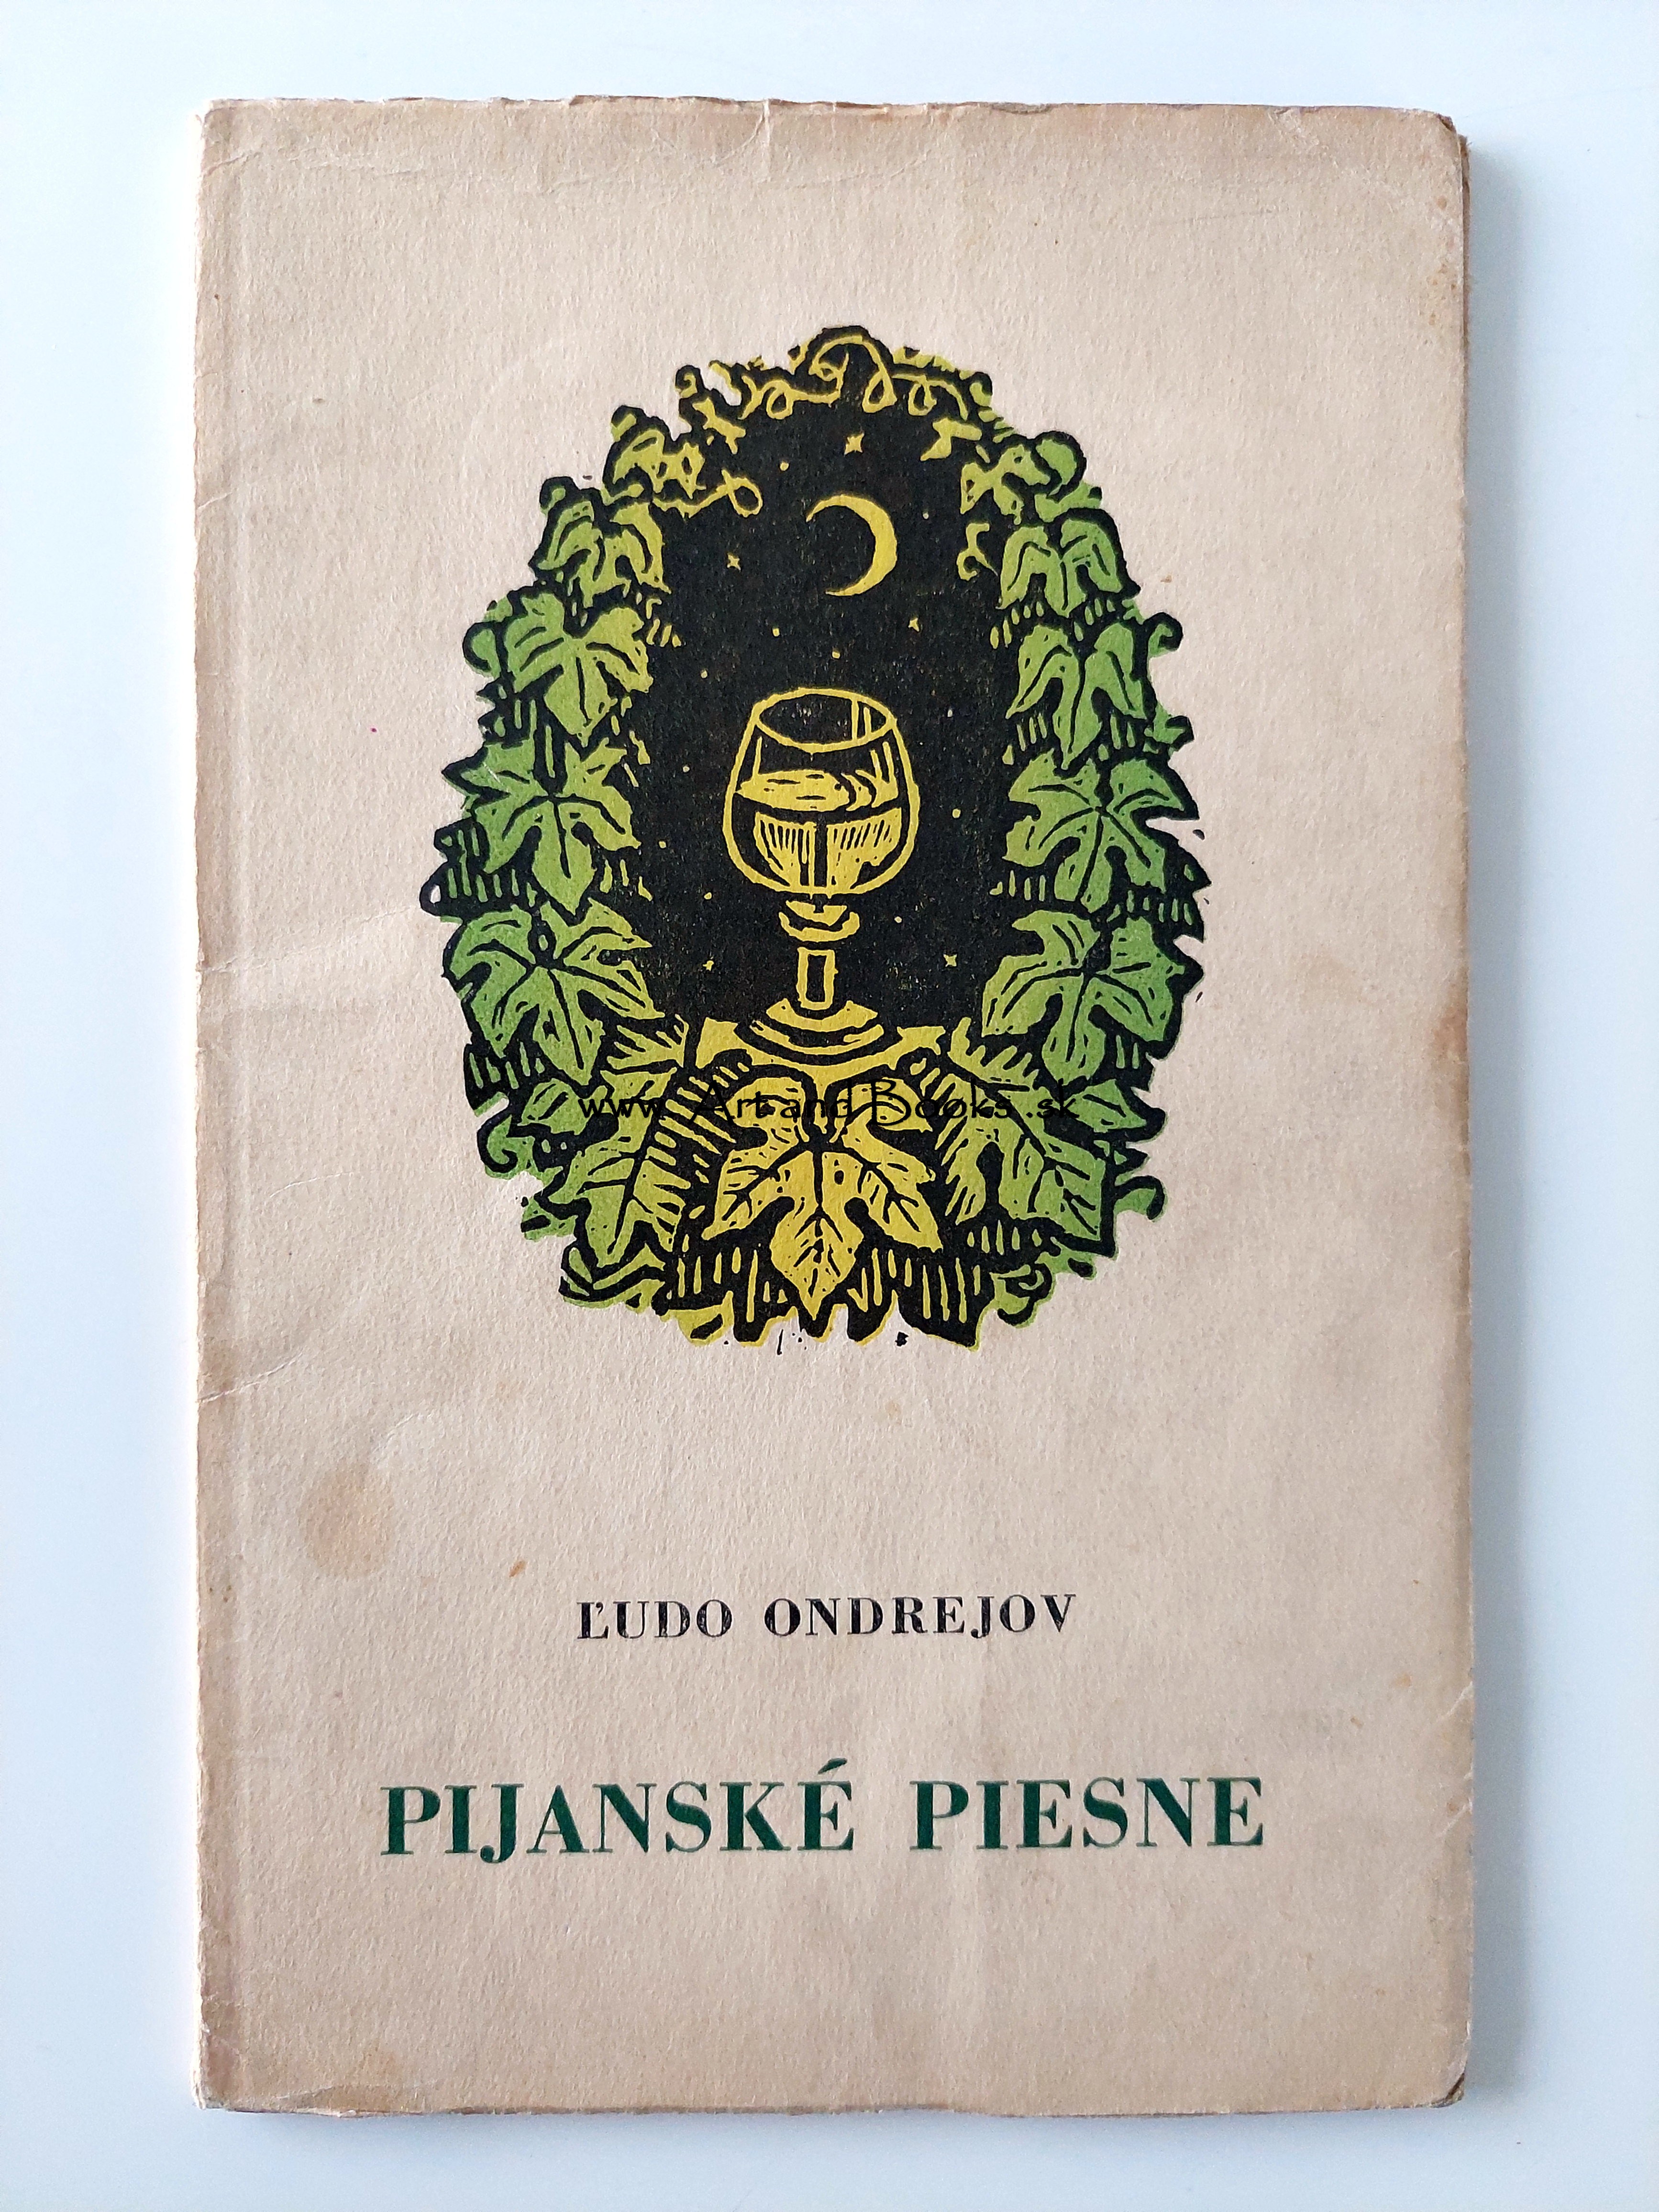 Ľudo Ondrejov - Pijanské piesne (1941) (sold/predané) ● 105005